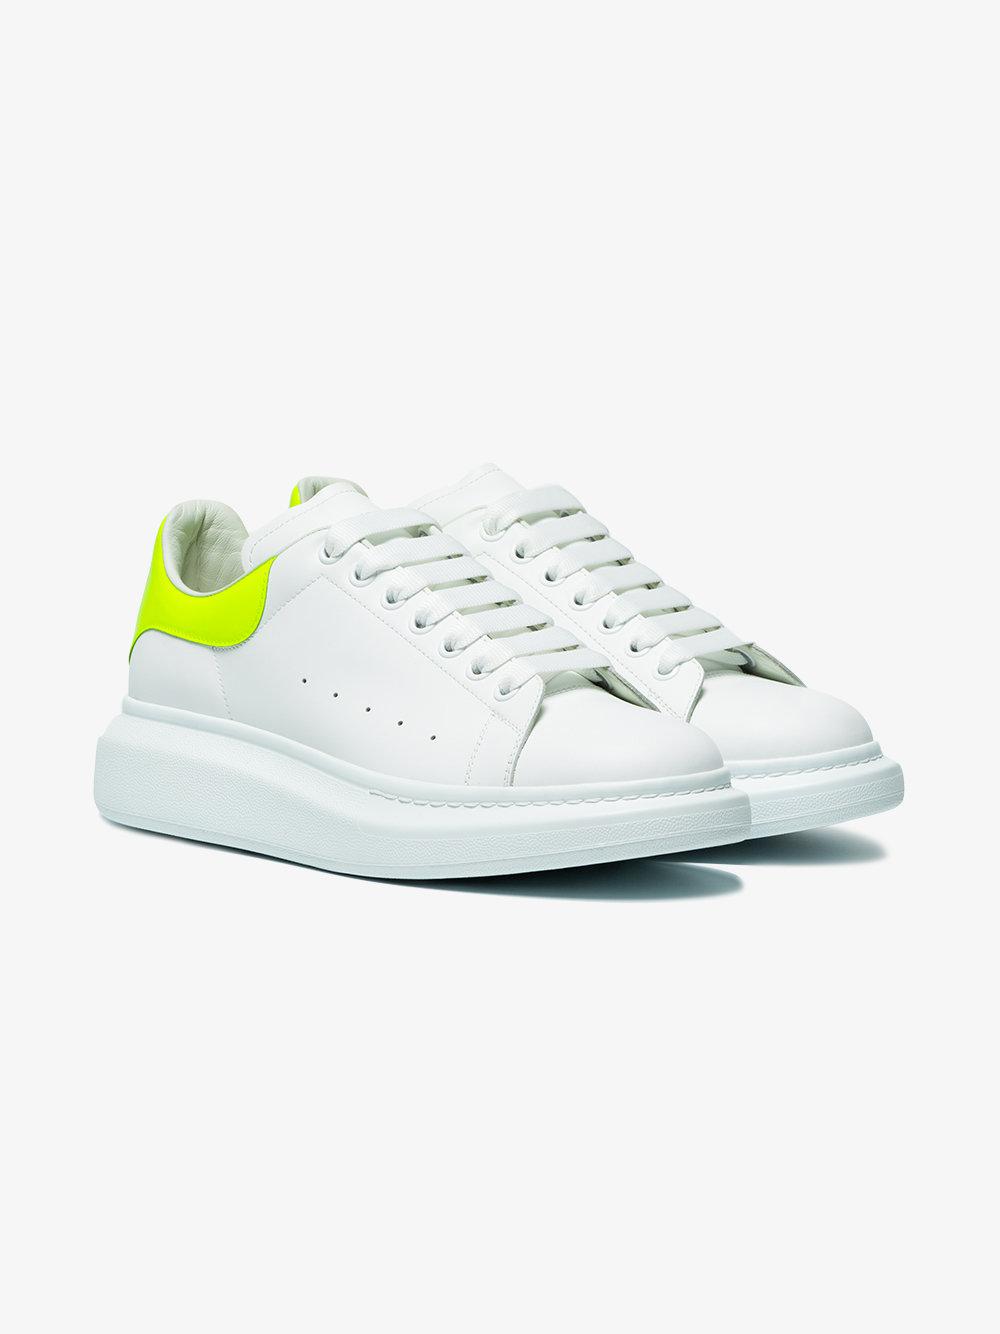 blak- white Alexander Mcqueen Sneakers at Rs 799/pair in Ganjam | ID:  26746532512